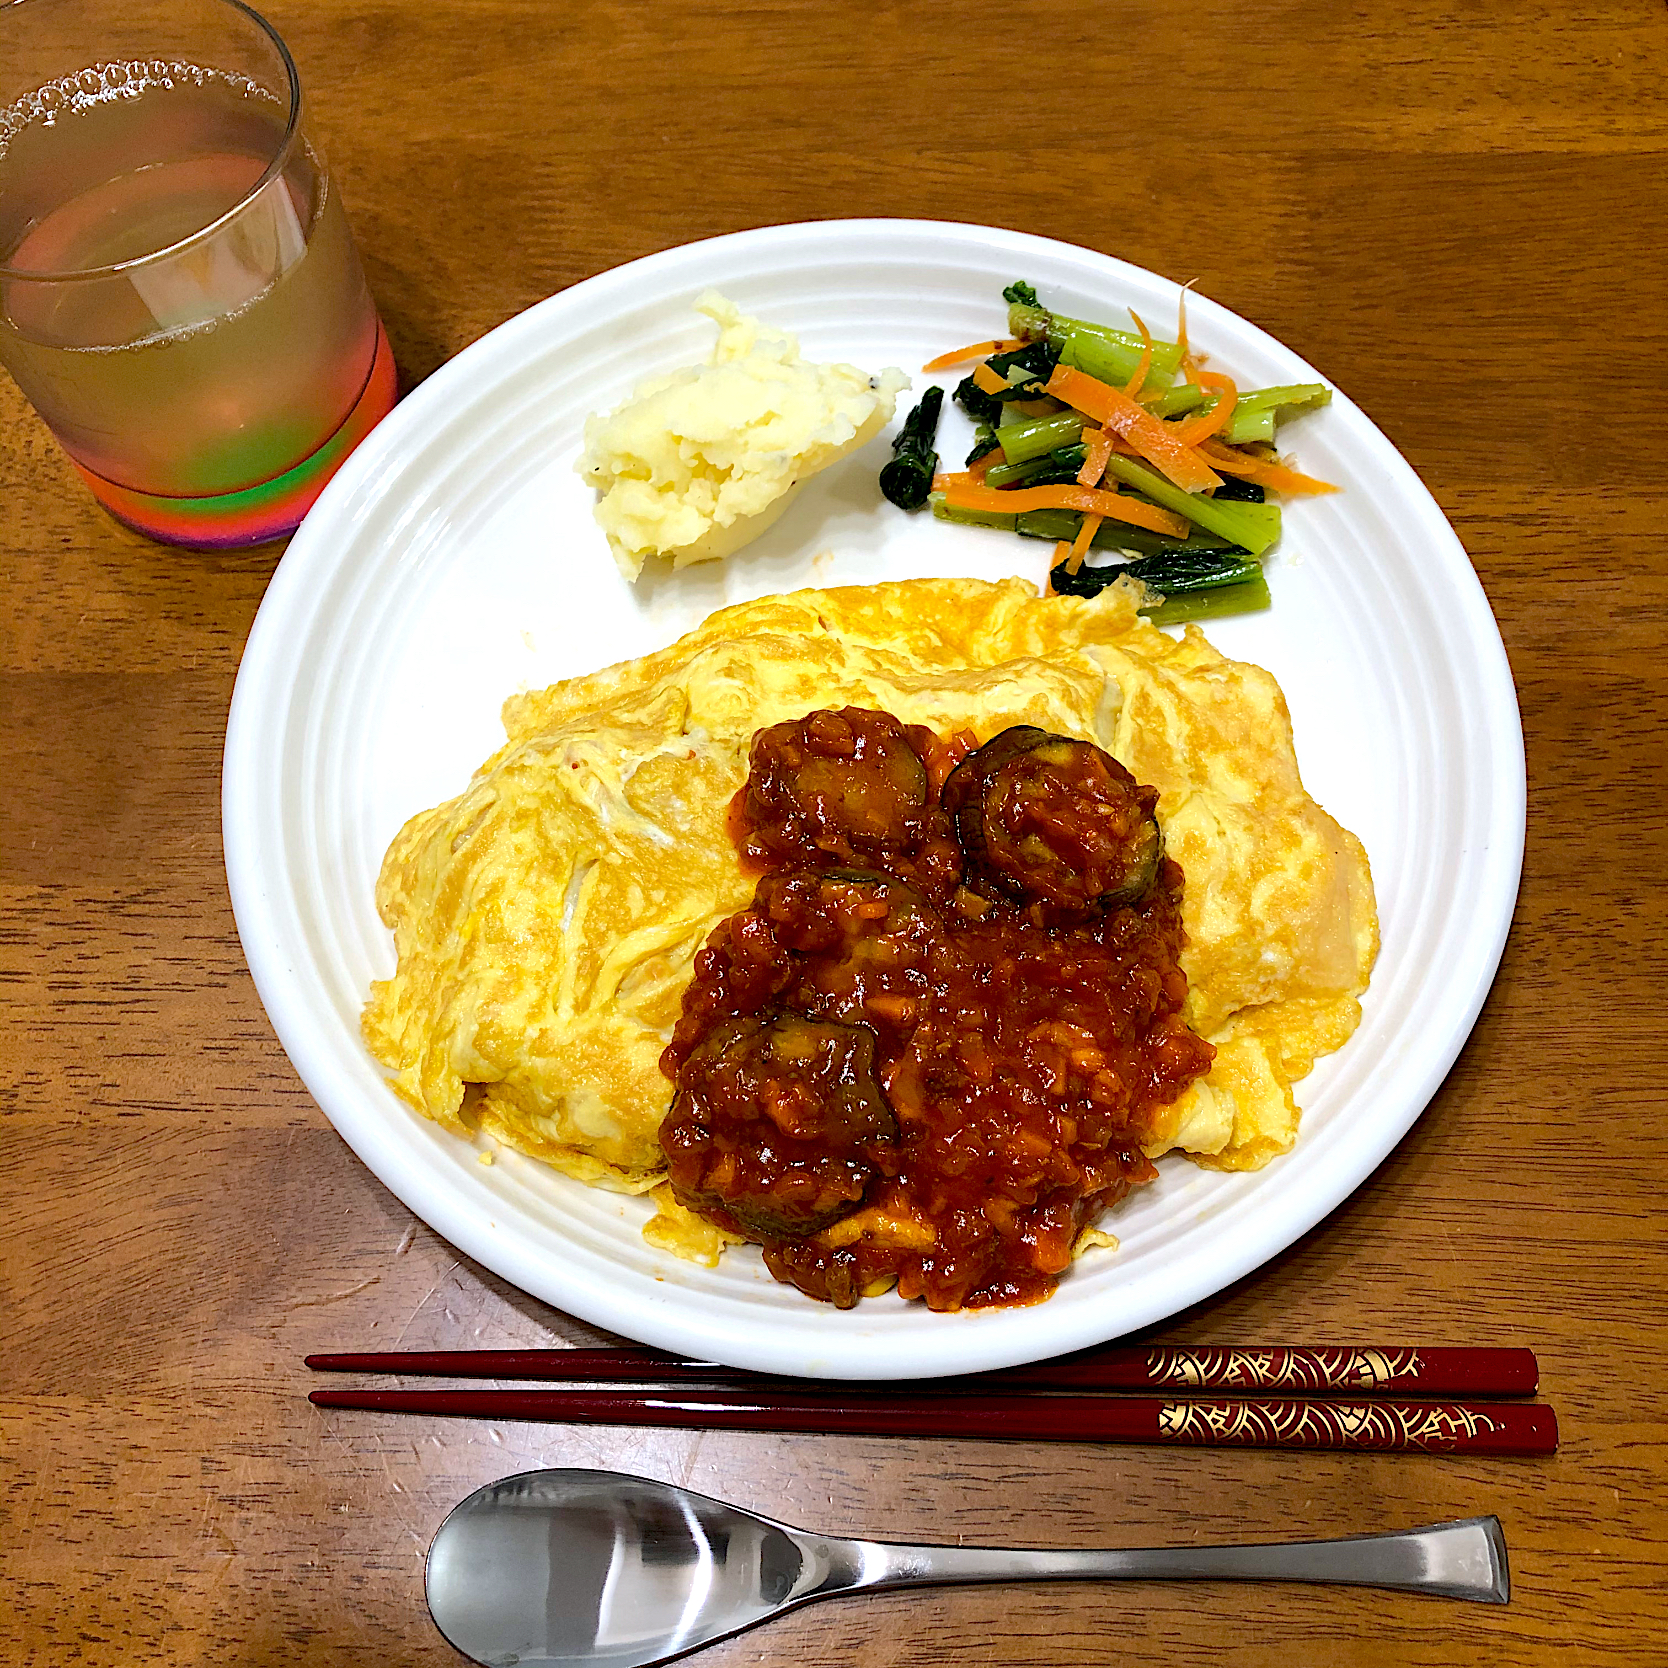 オムライス 茄子のミートソースがけ たまご料理グランプリ21 ヤマサ醤油株式会社